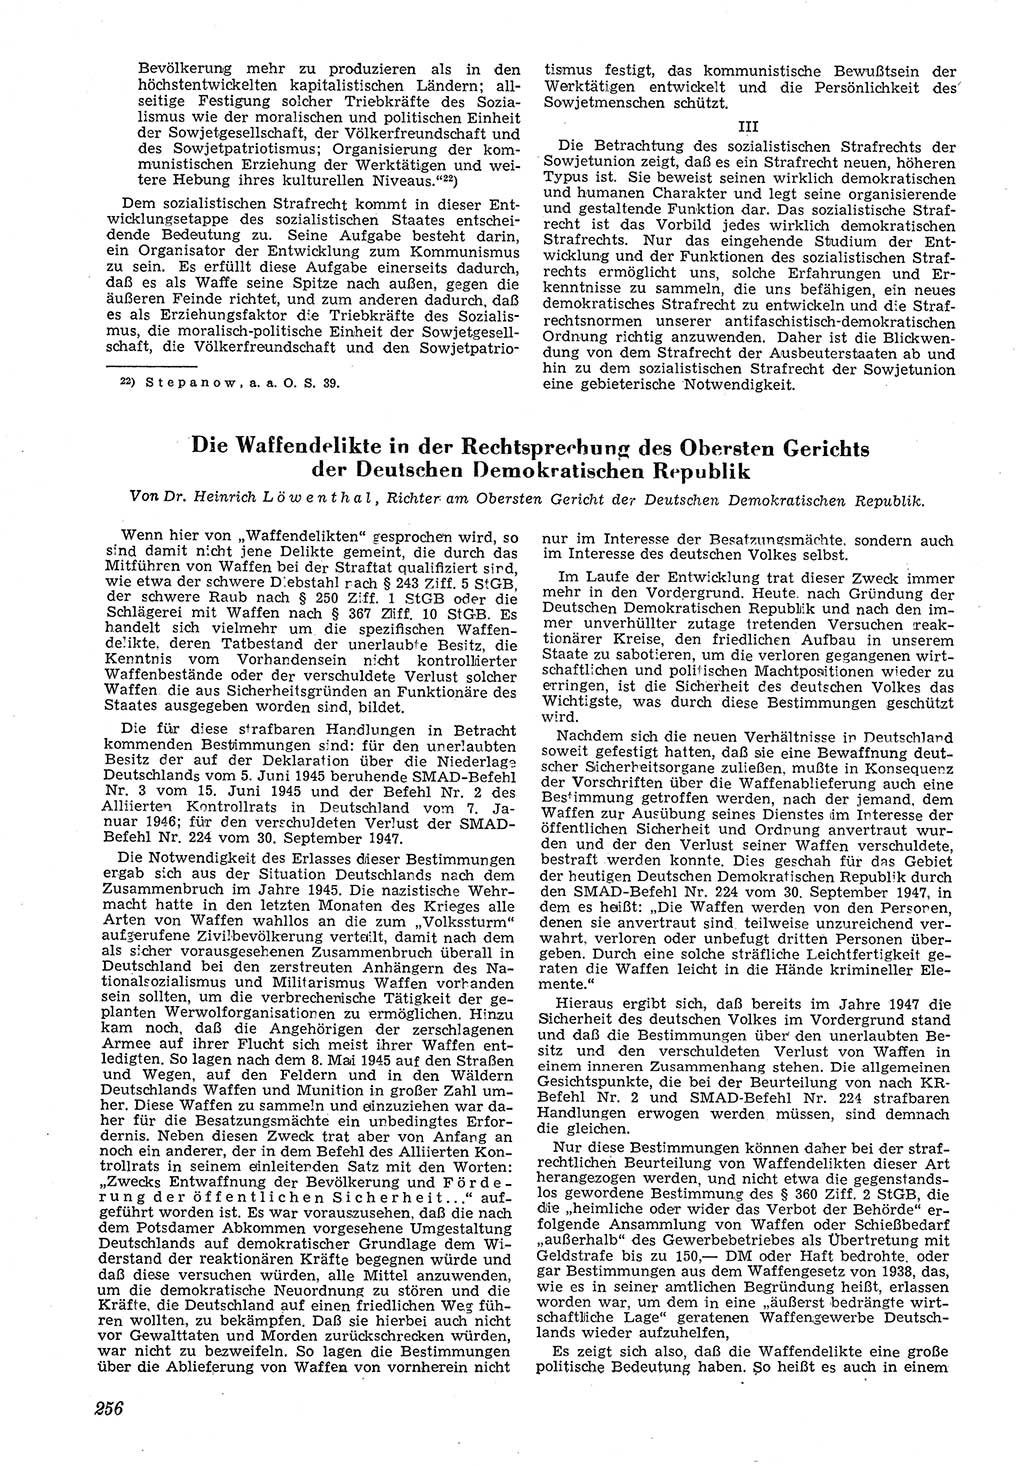 Neue Justiz (NJ), Zeitschrift für Recht und Rechtswissenschaft [Deutsche Demokratische Republik (DDR)], 5. Jahrgang 1951, Seite 256 (NJ DDR 1951, S. 256)